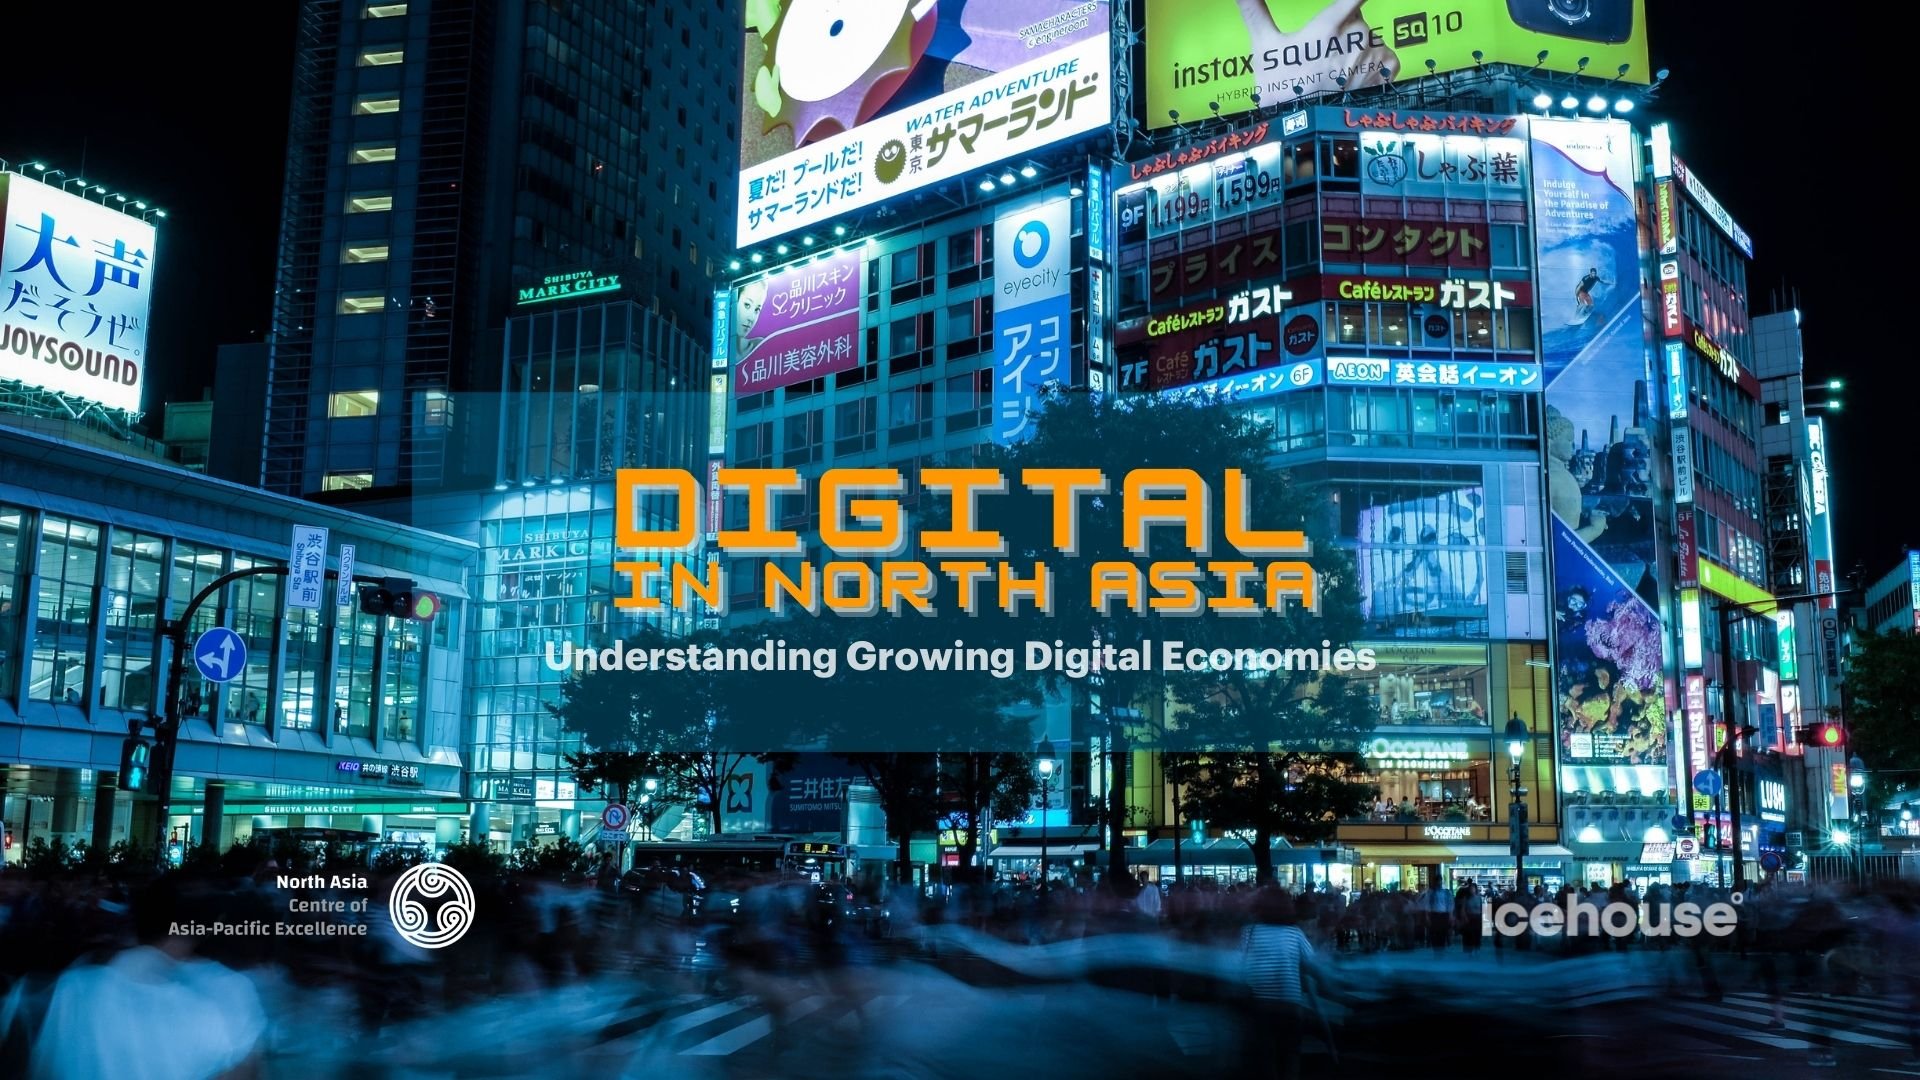 Digital In North Asia - Understanding Growing Digital Economies